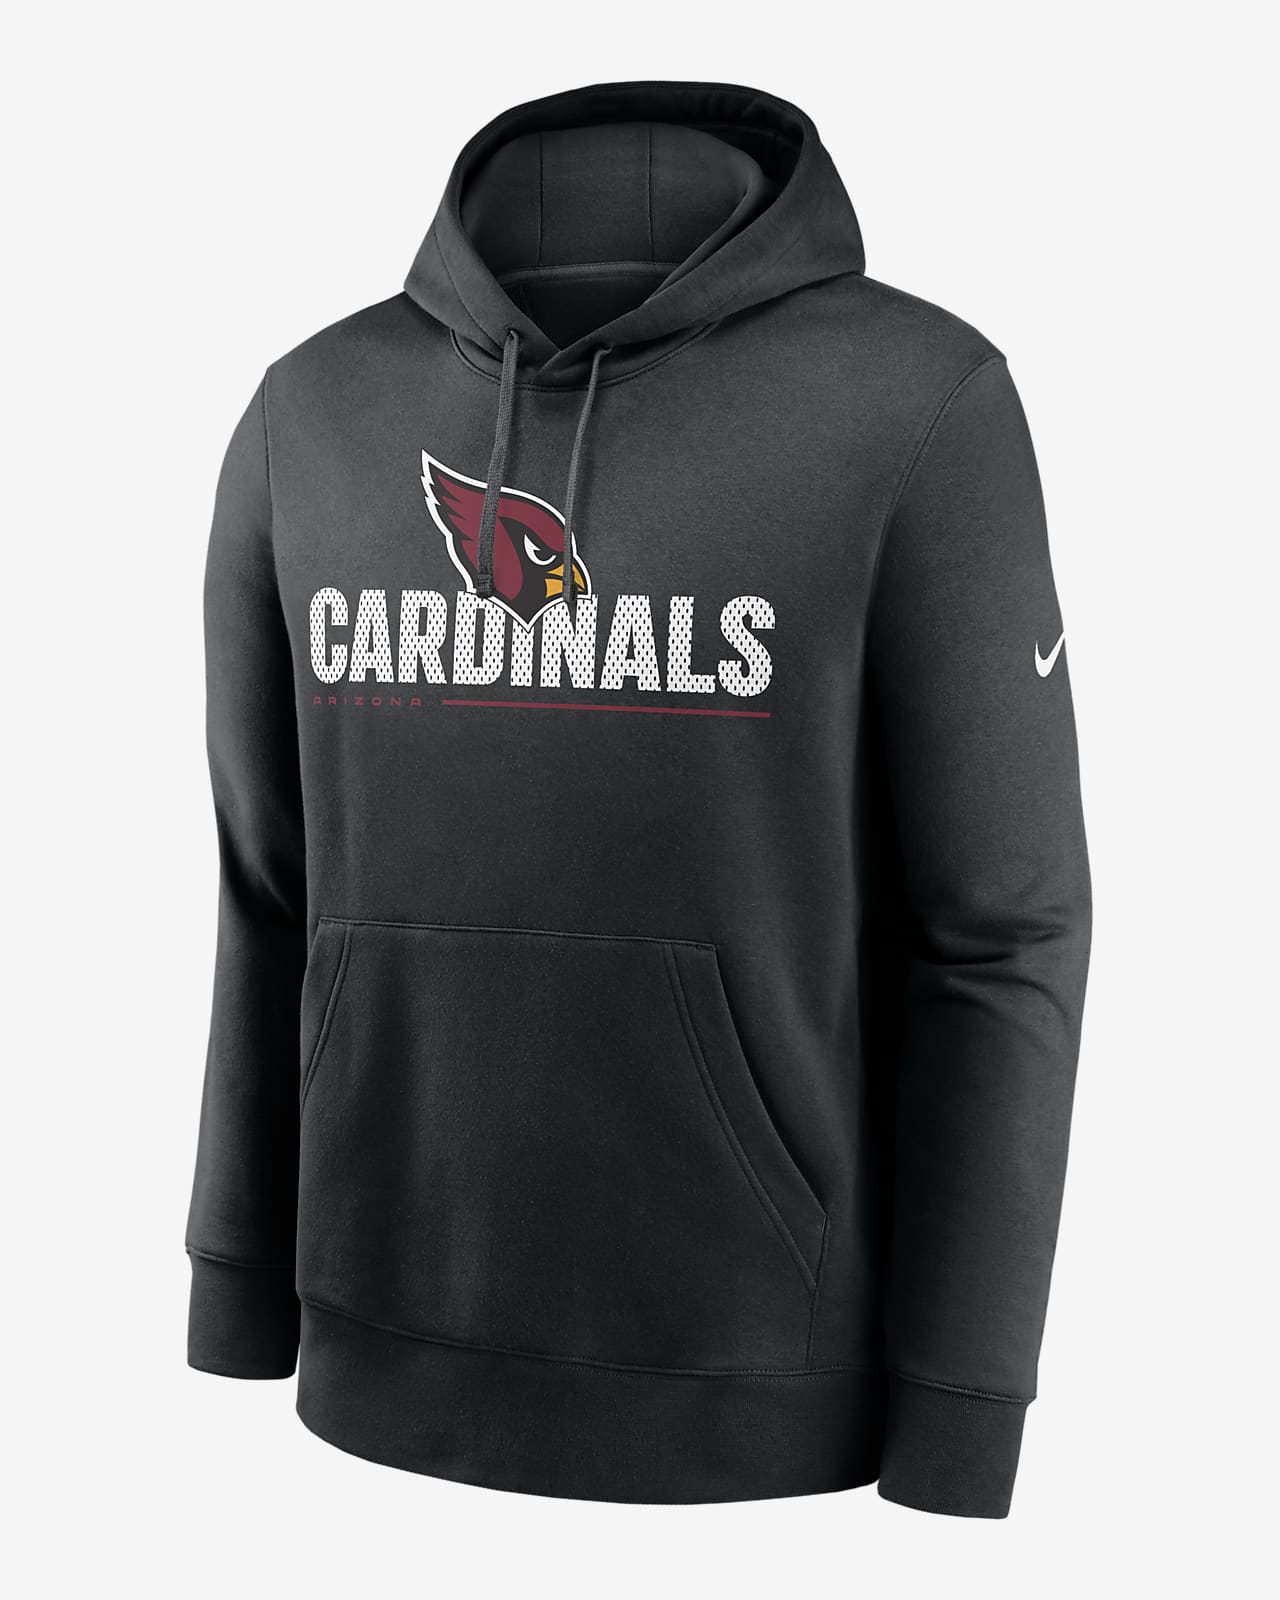 proljeće vlaga penju cardinals hoodie 